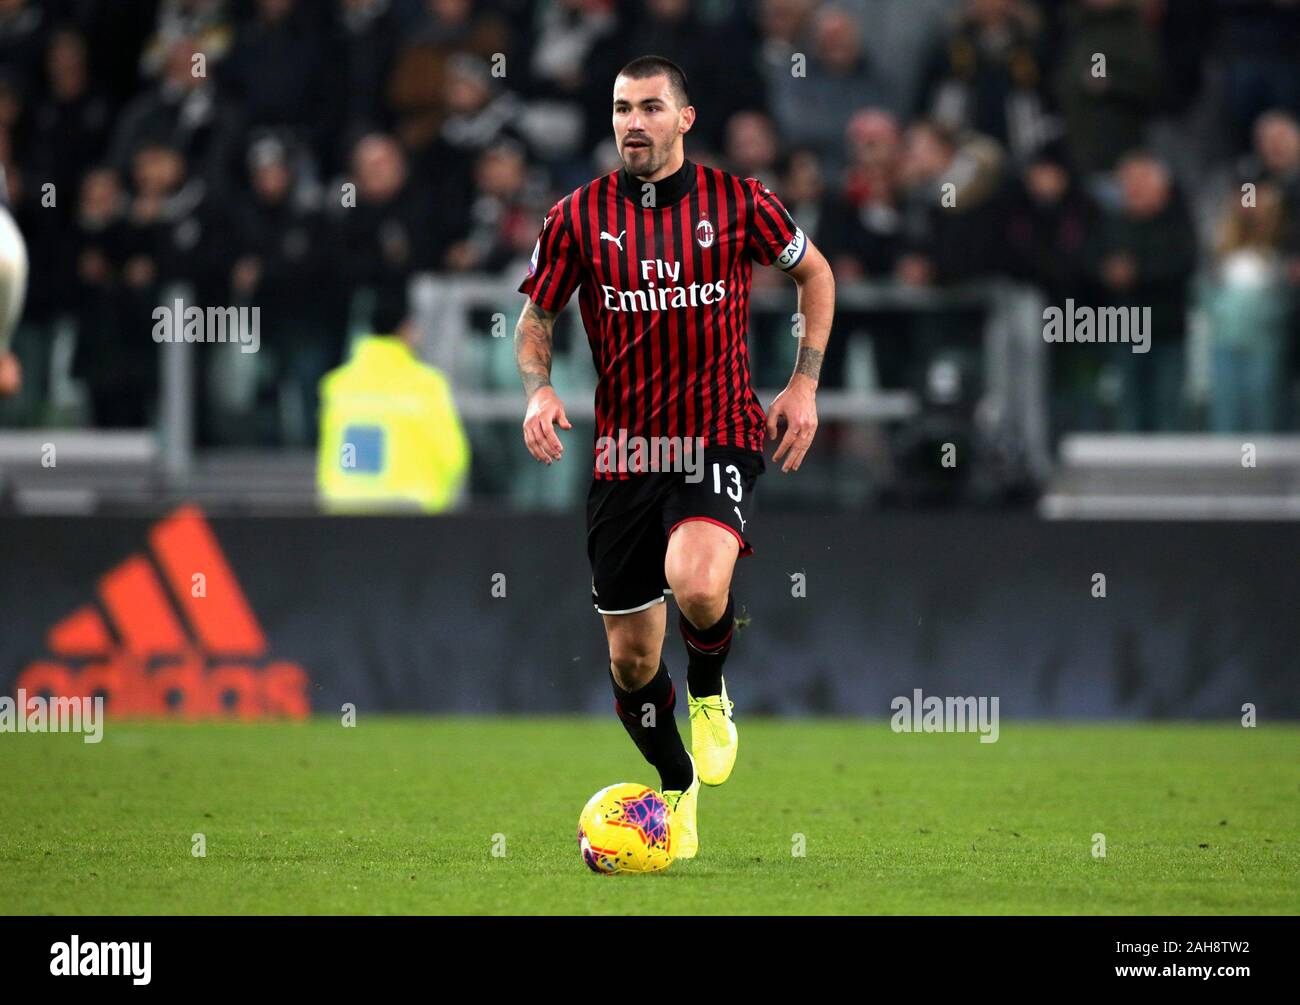 Turin, ITALIE - 10 novembre 2019: Alessio Romagnoli en action pendant la série A 2019/2020 JUVENTUS / MILAN au stade Allianz. Banque D'Images